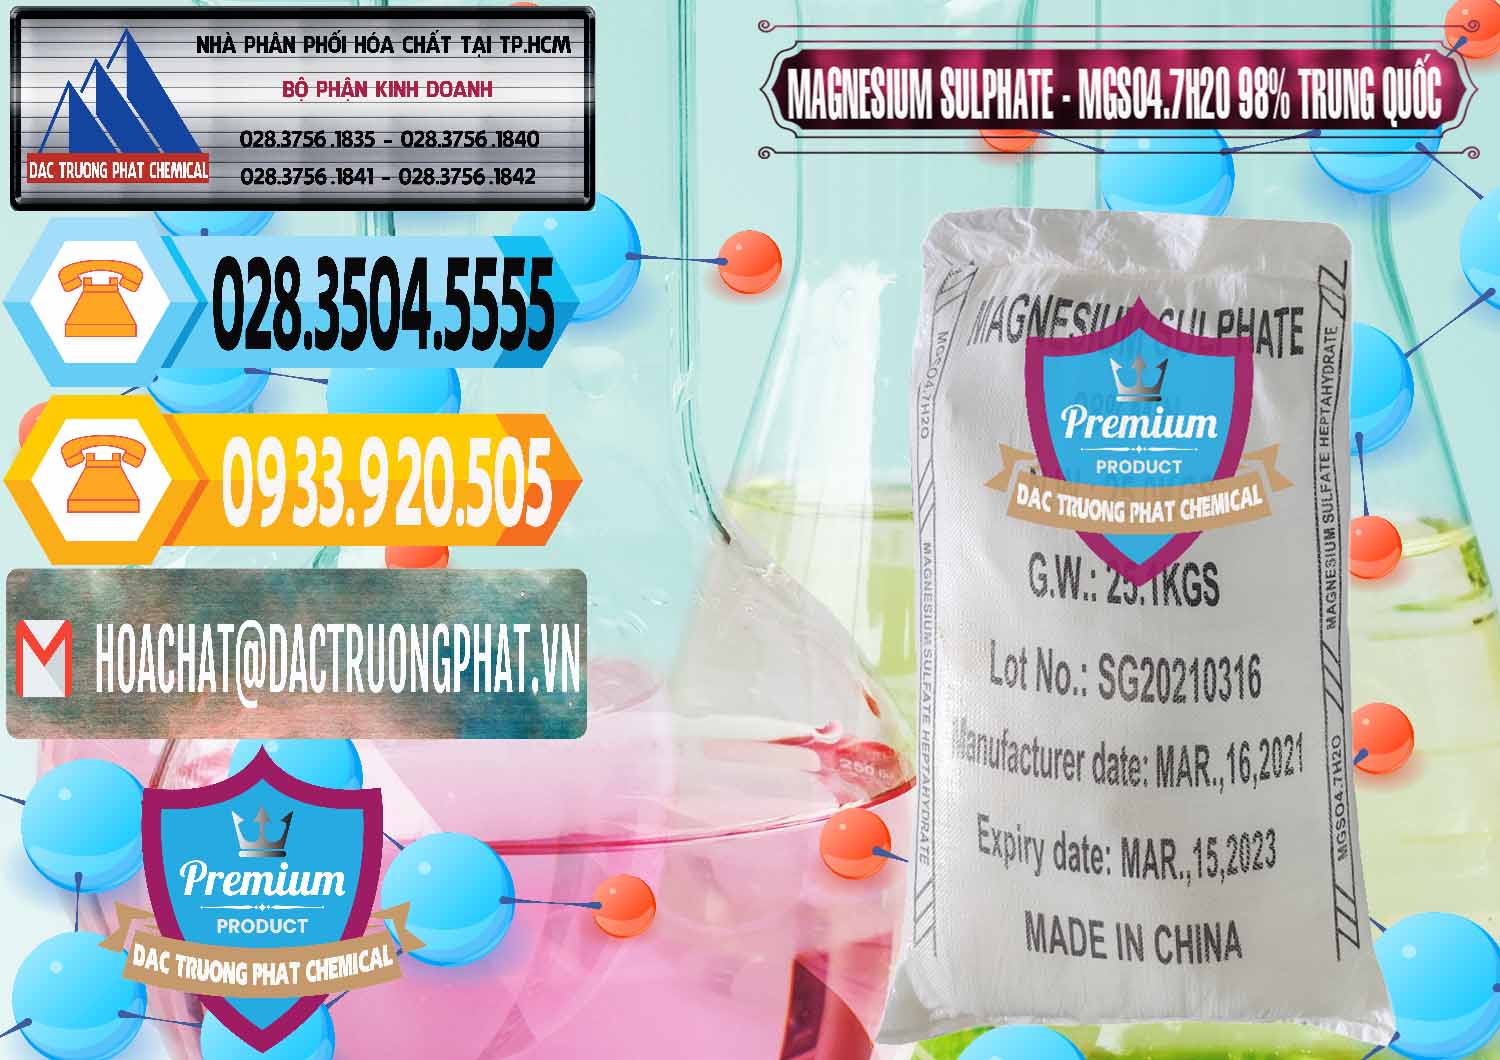 Nơi chuyên nhập khẩu ( bán ) MGSO4.7H2O – Magnesium Sulphate 98% Trung Quốc China - 0229 - Công ty chuyên cung cấp ( kinh doanh ) hóa chất tại TP.HCM - hoachattayrua.net